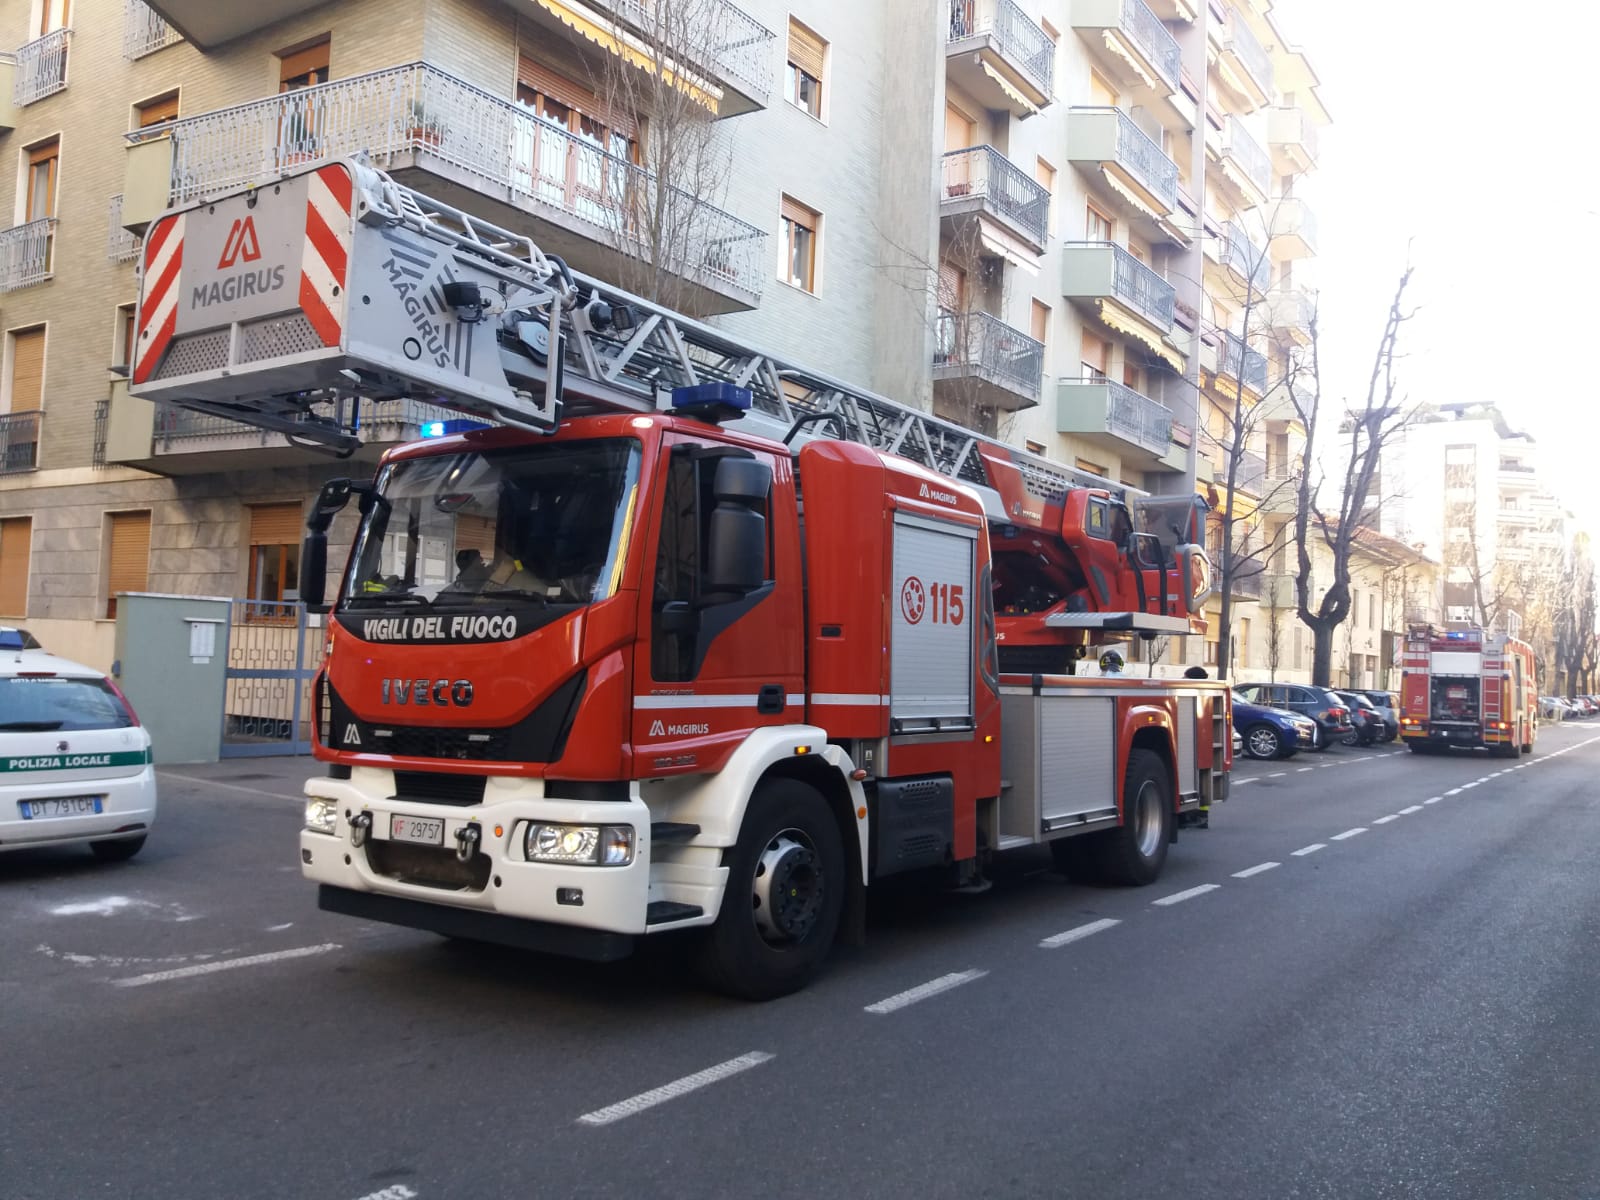 Ieri a Saronno: pompieri in viale Rimembranze, via al processo contro la Ndrangheta, scoperta discarica abusiva